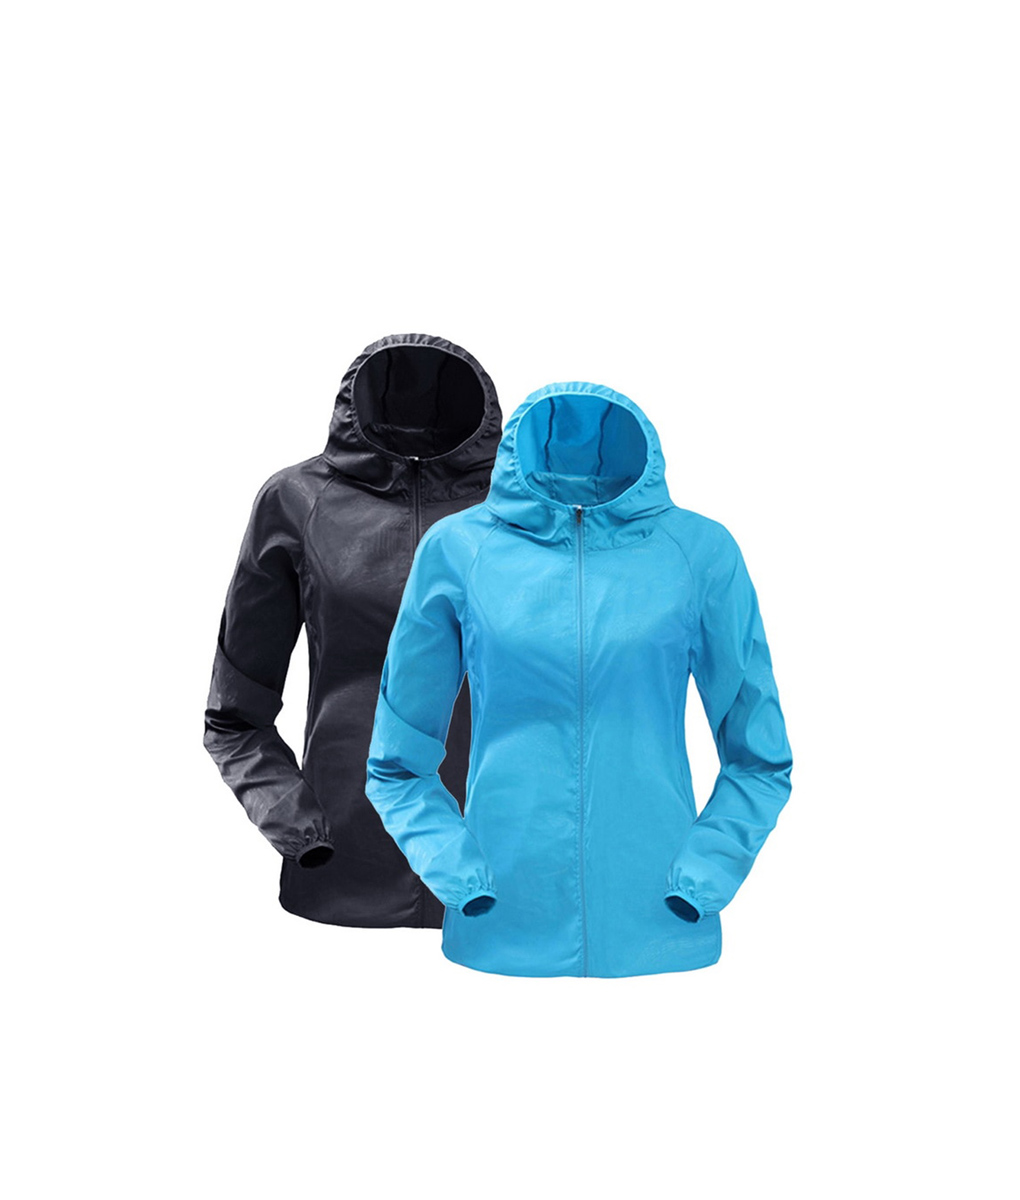 Balakie 2019 Unisex Casual Jackets Windproof Ultra-Light Rainproof Windbreaker Outerwear